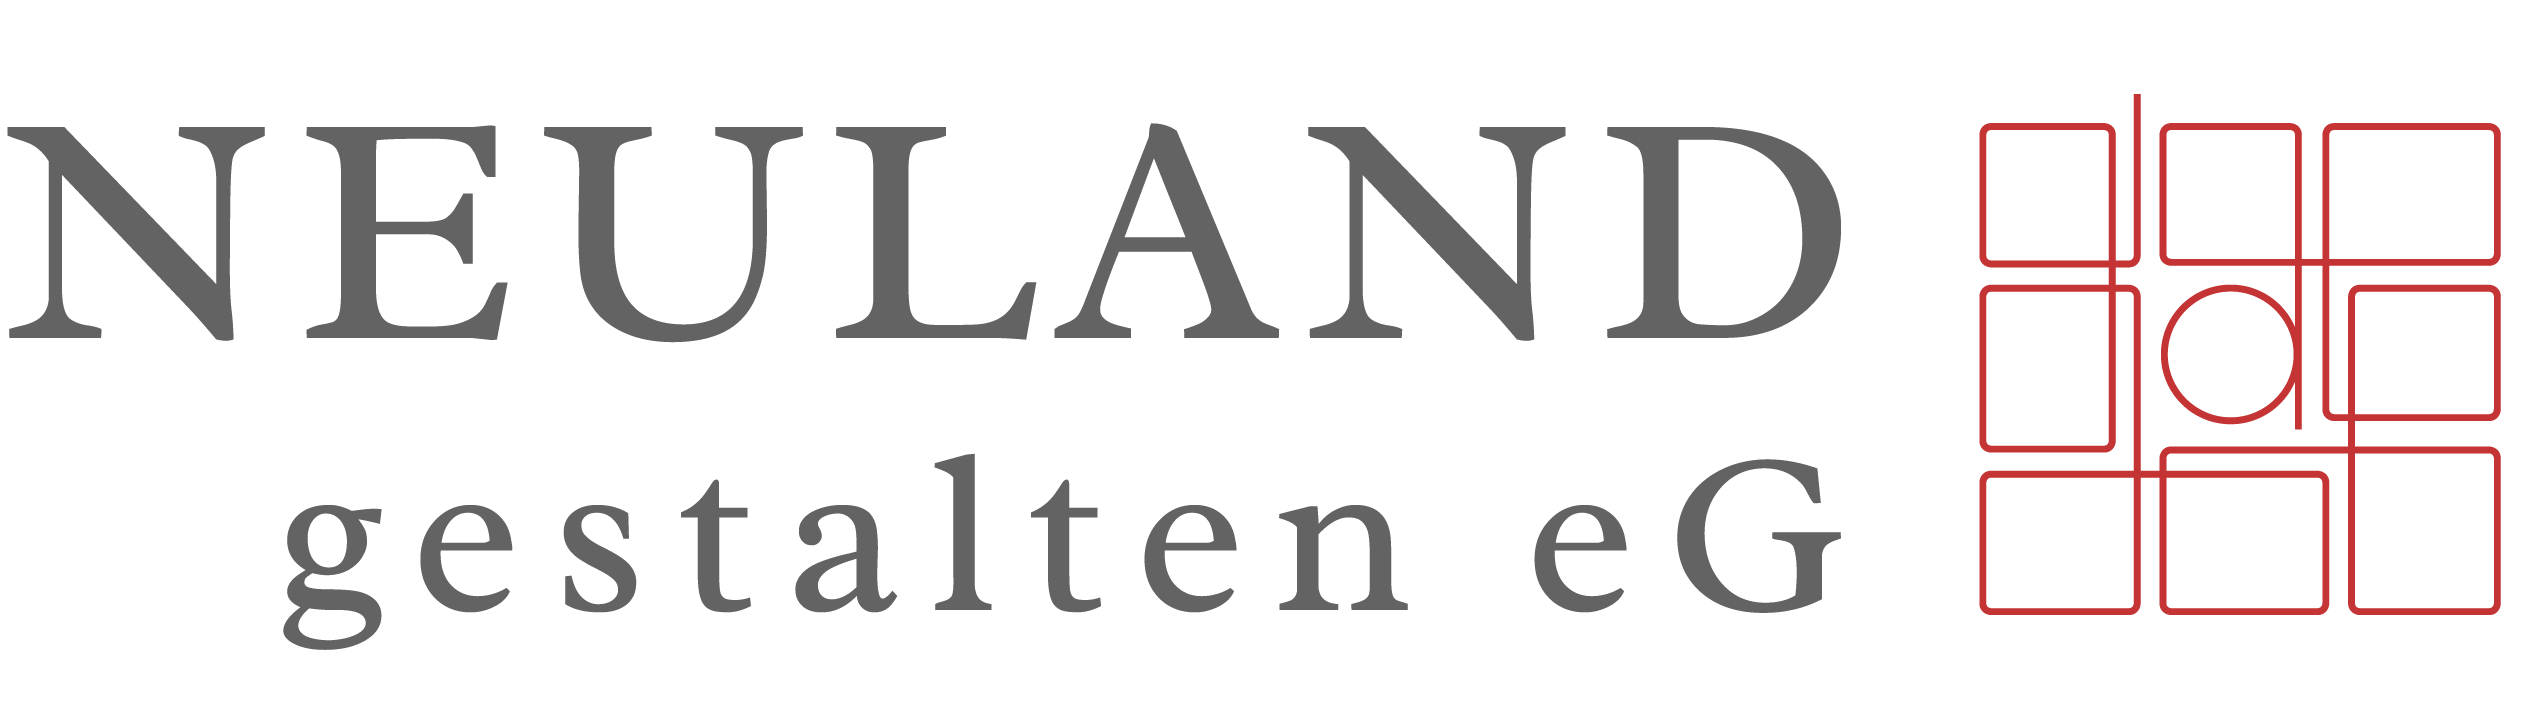 Neuland gestalten eG Logo